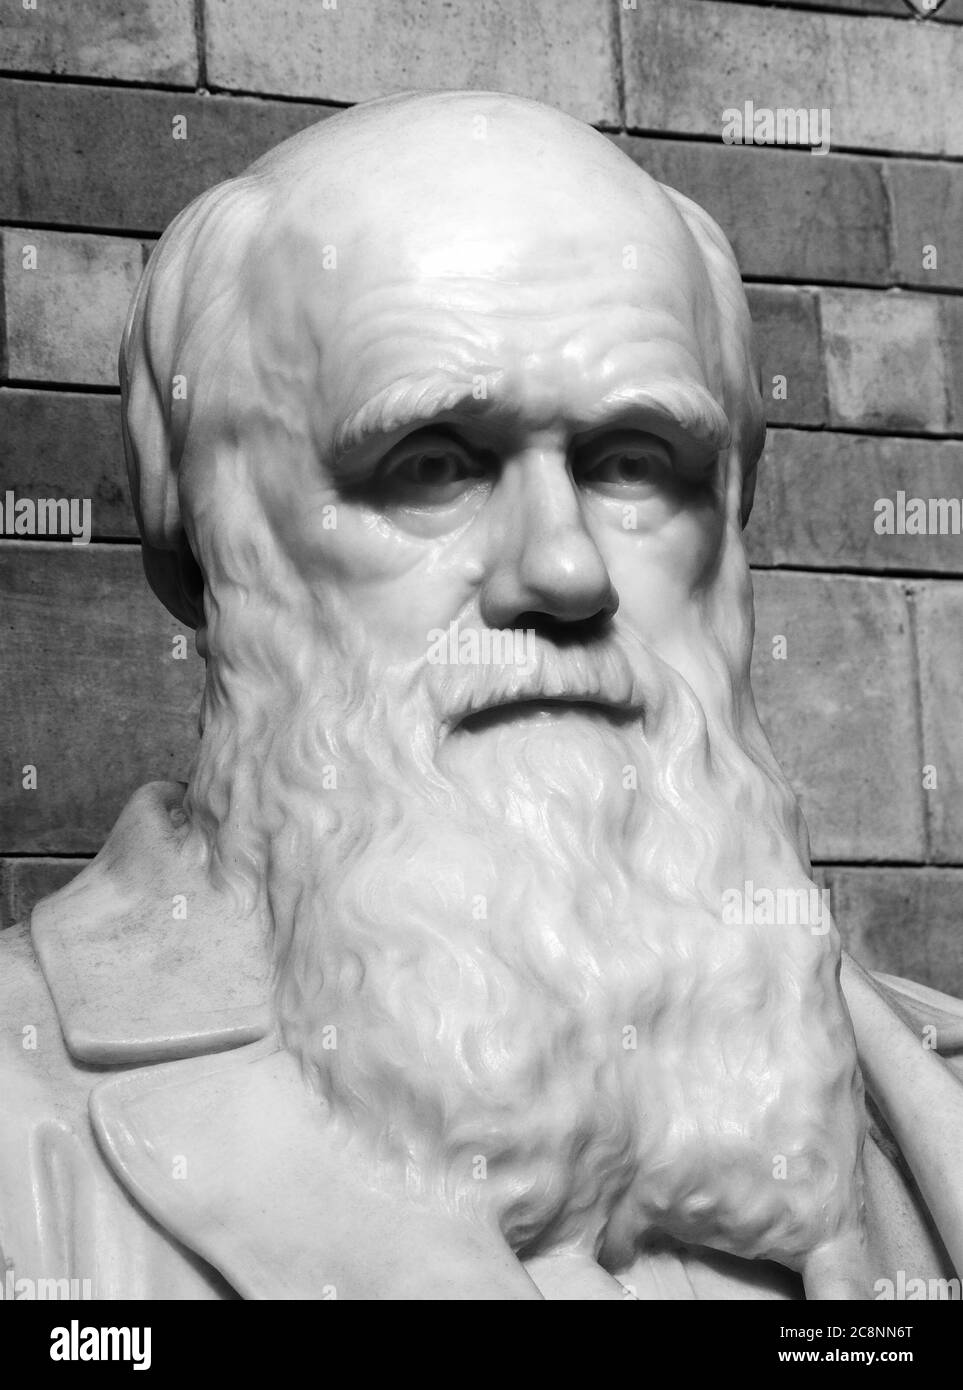 Statue commémorative Charles Darwin placée dans le hall central du Musée d'Histoire naturelle en 1885, Londres Angleterre Royaume-Uni a noté pour son travail sur l'évolution et Banque D'Images